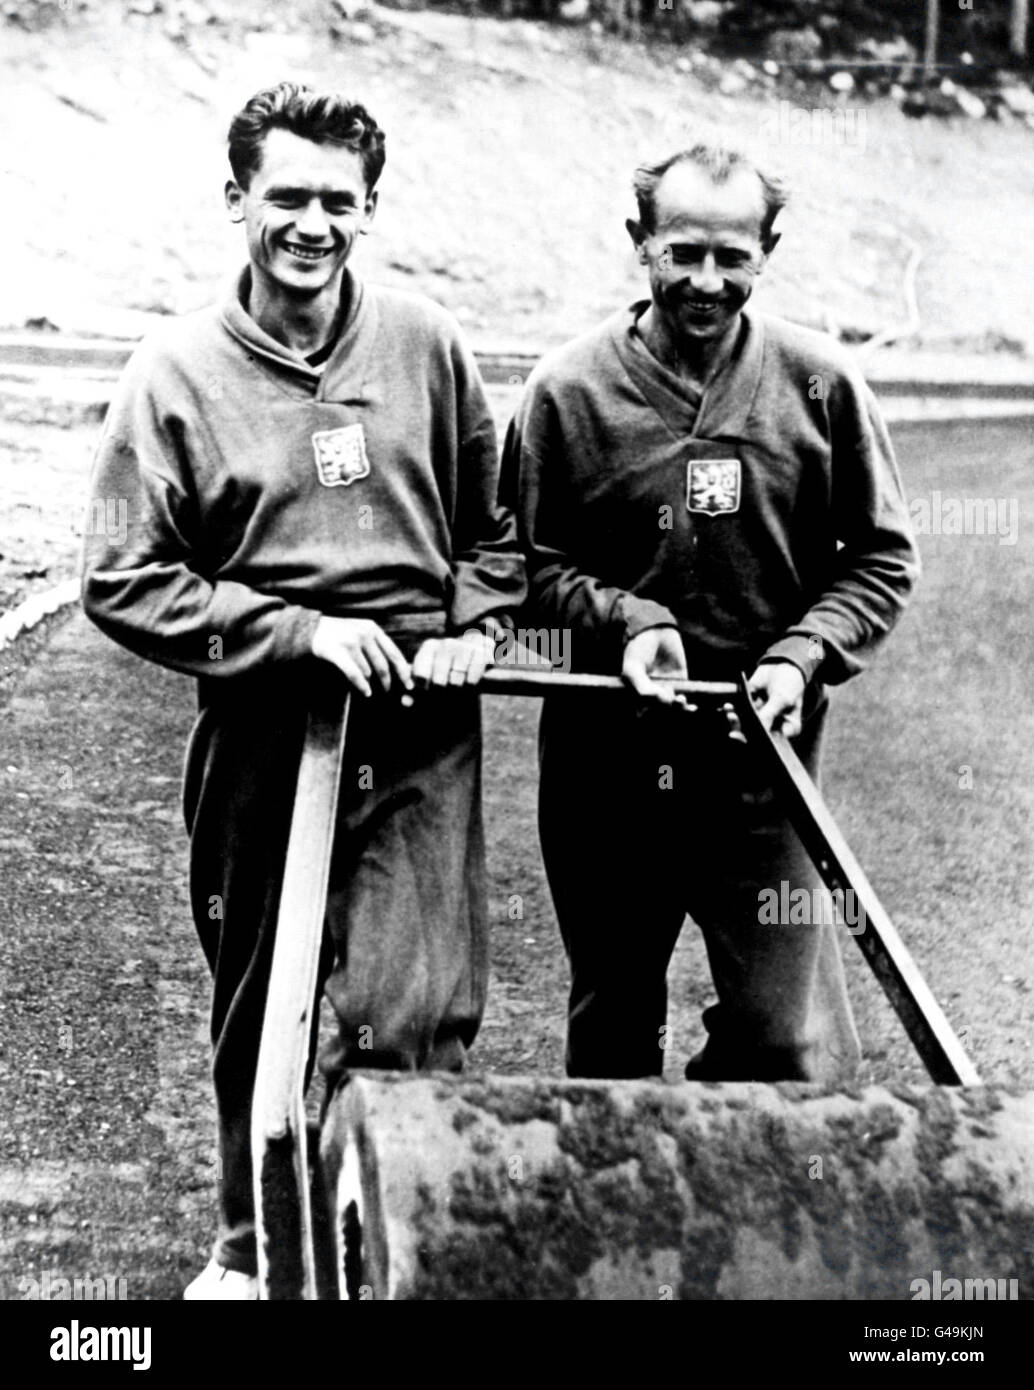 Leichtathletik - Olympische Spiele In Helsinki 1952. Emil Zatopek und der Landsmann Csvona halten sich fit mit einer Wendung des Rollerolympiadorfes in Helsinki. Stockfoto